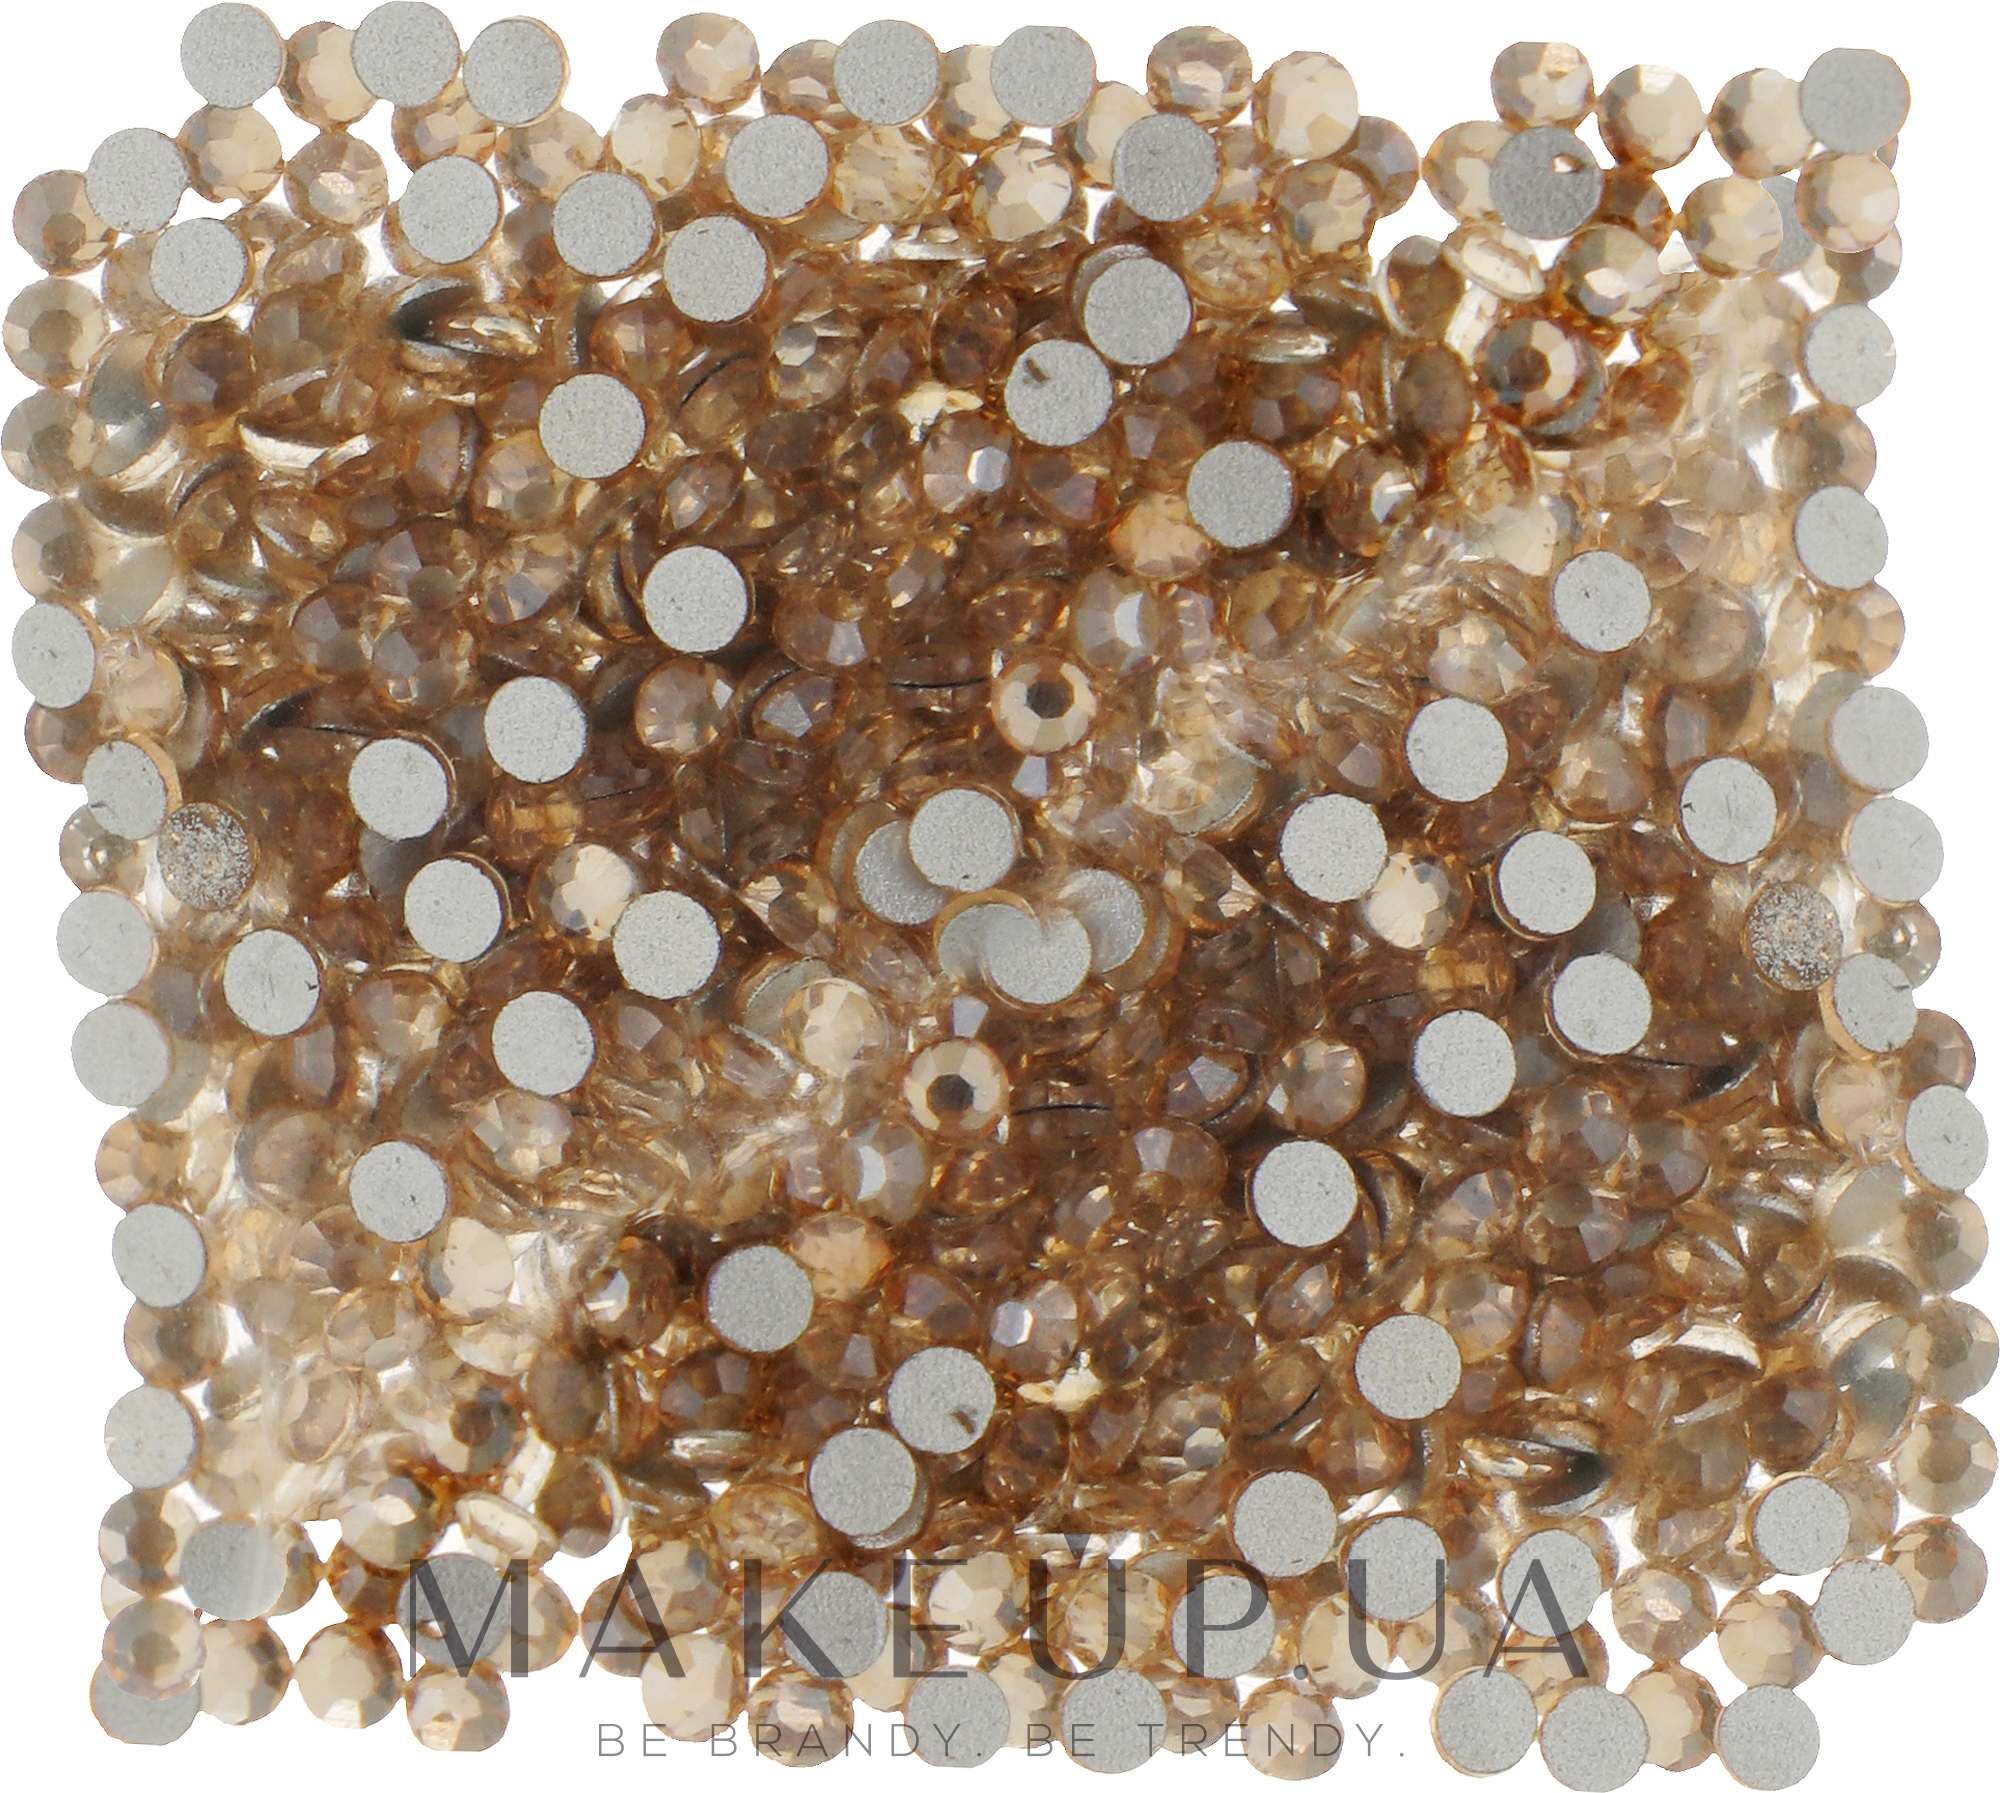 Декоративные кристаллы для ногтей «Crystal Golden Shadow», размер SS 05, 500шт - Kodi Professional — фото 500шт